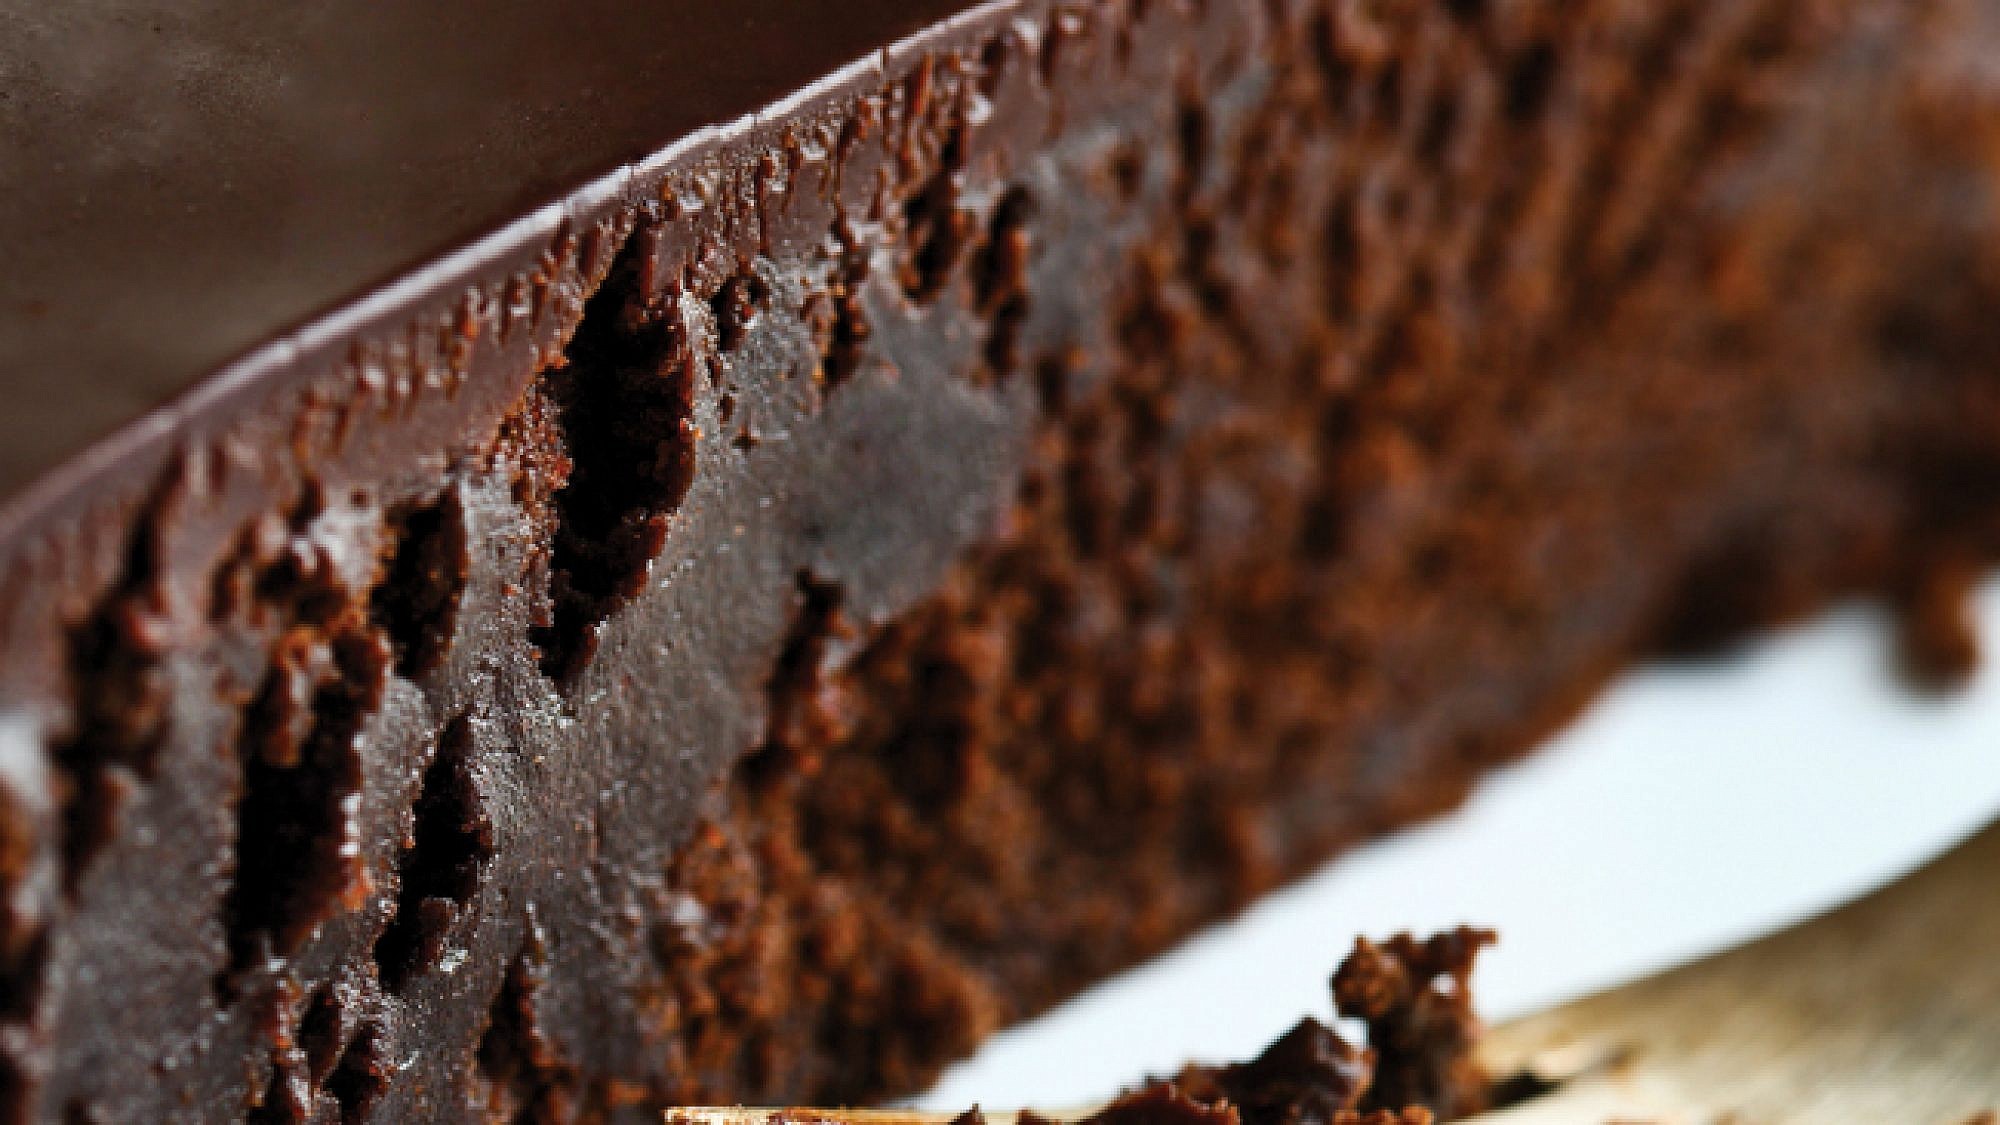 עוגת שוקולד עם קרם מוקה. צילום: דן פרץ | סגנון: עמית פרבר